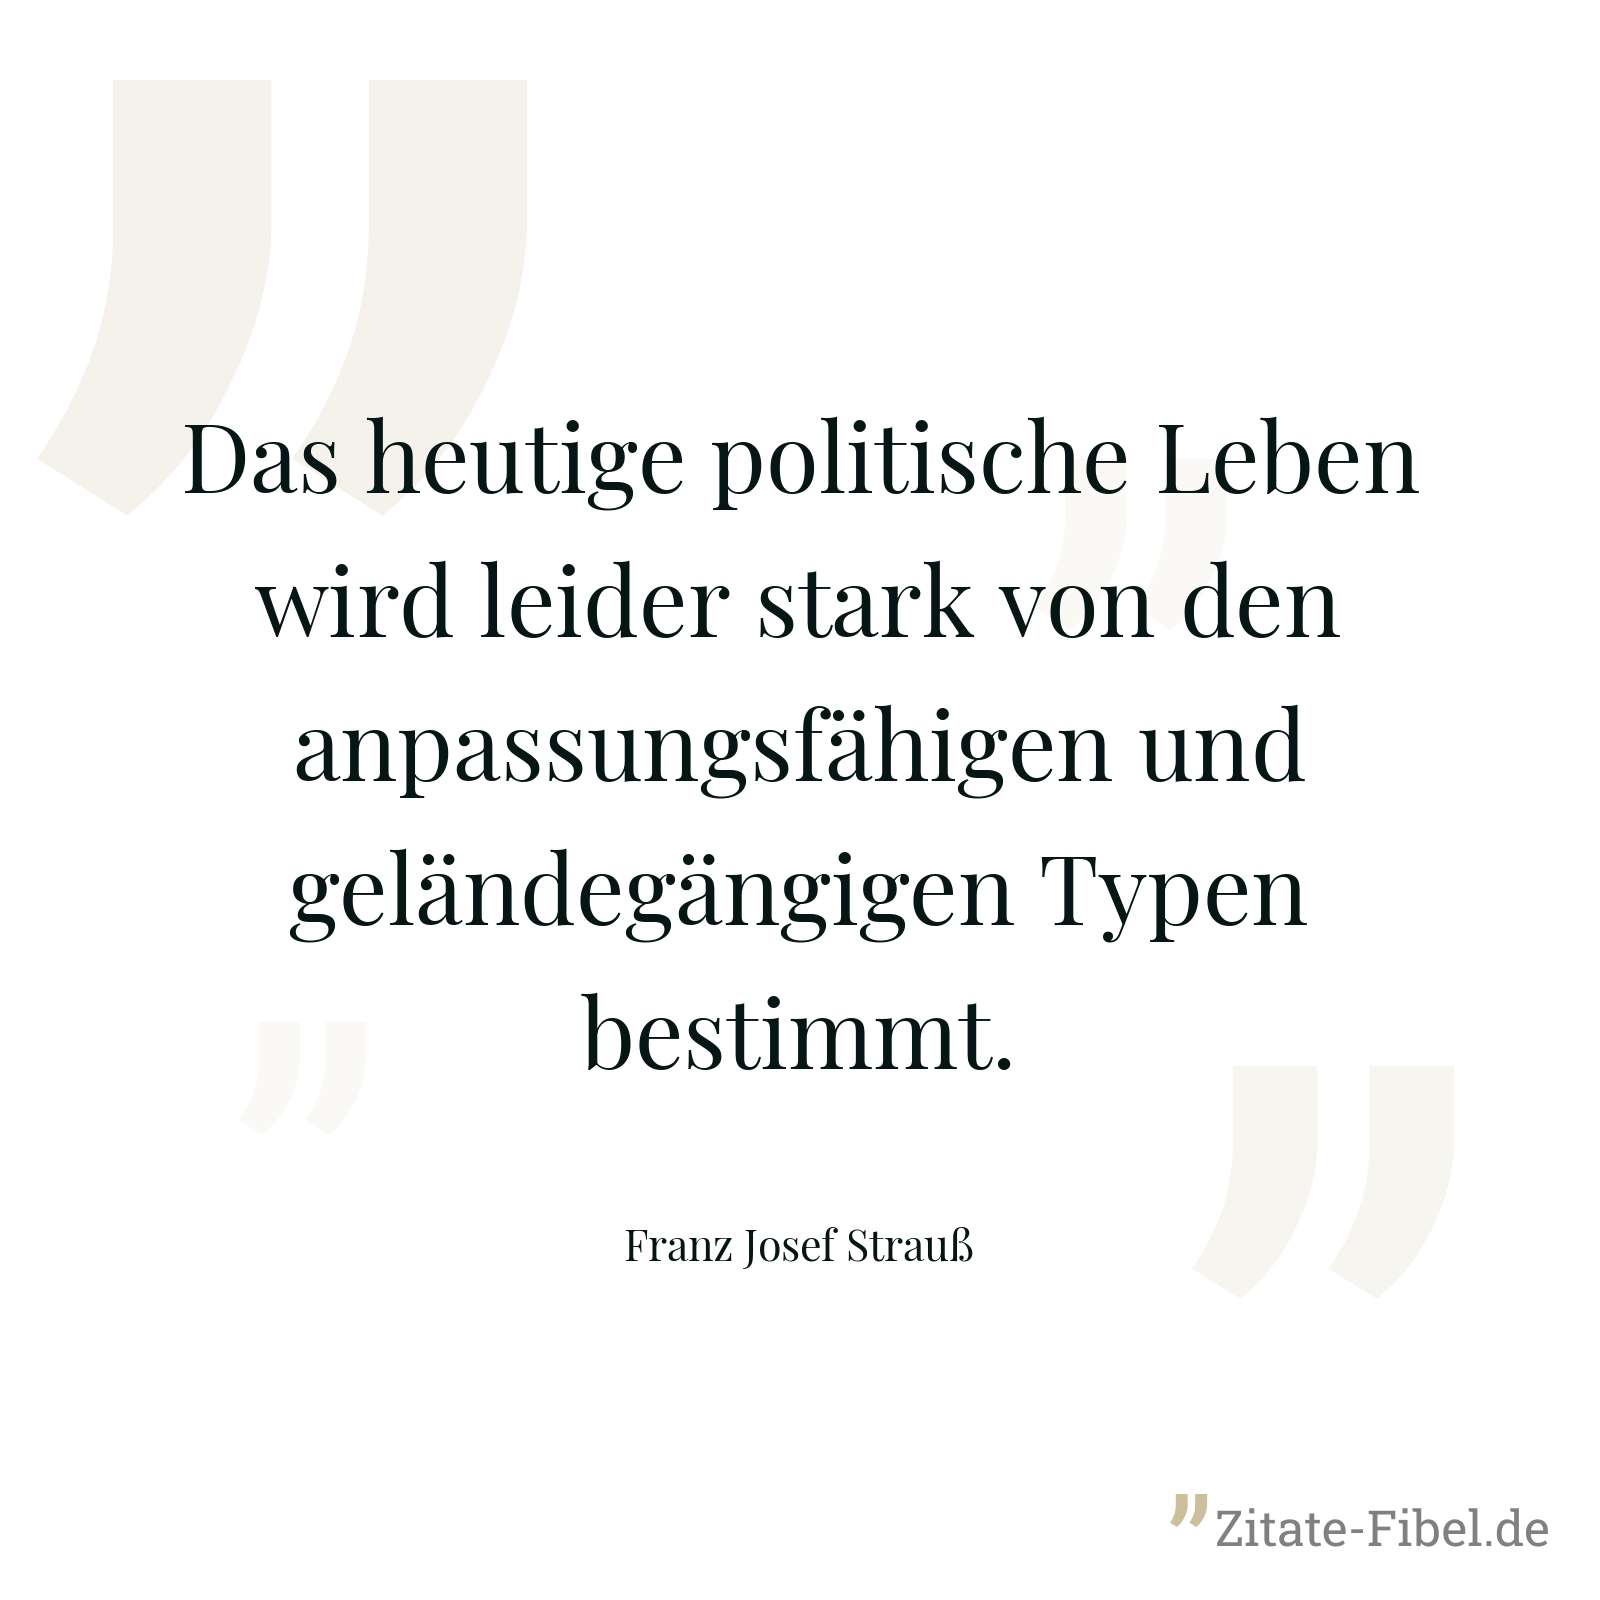 Das heutige politische Leben wird leider stark von den anpassungsfähigen und geländegängigen Typen bestimmt. - Franz Josef Strauß